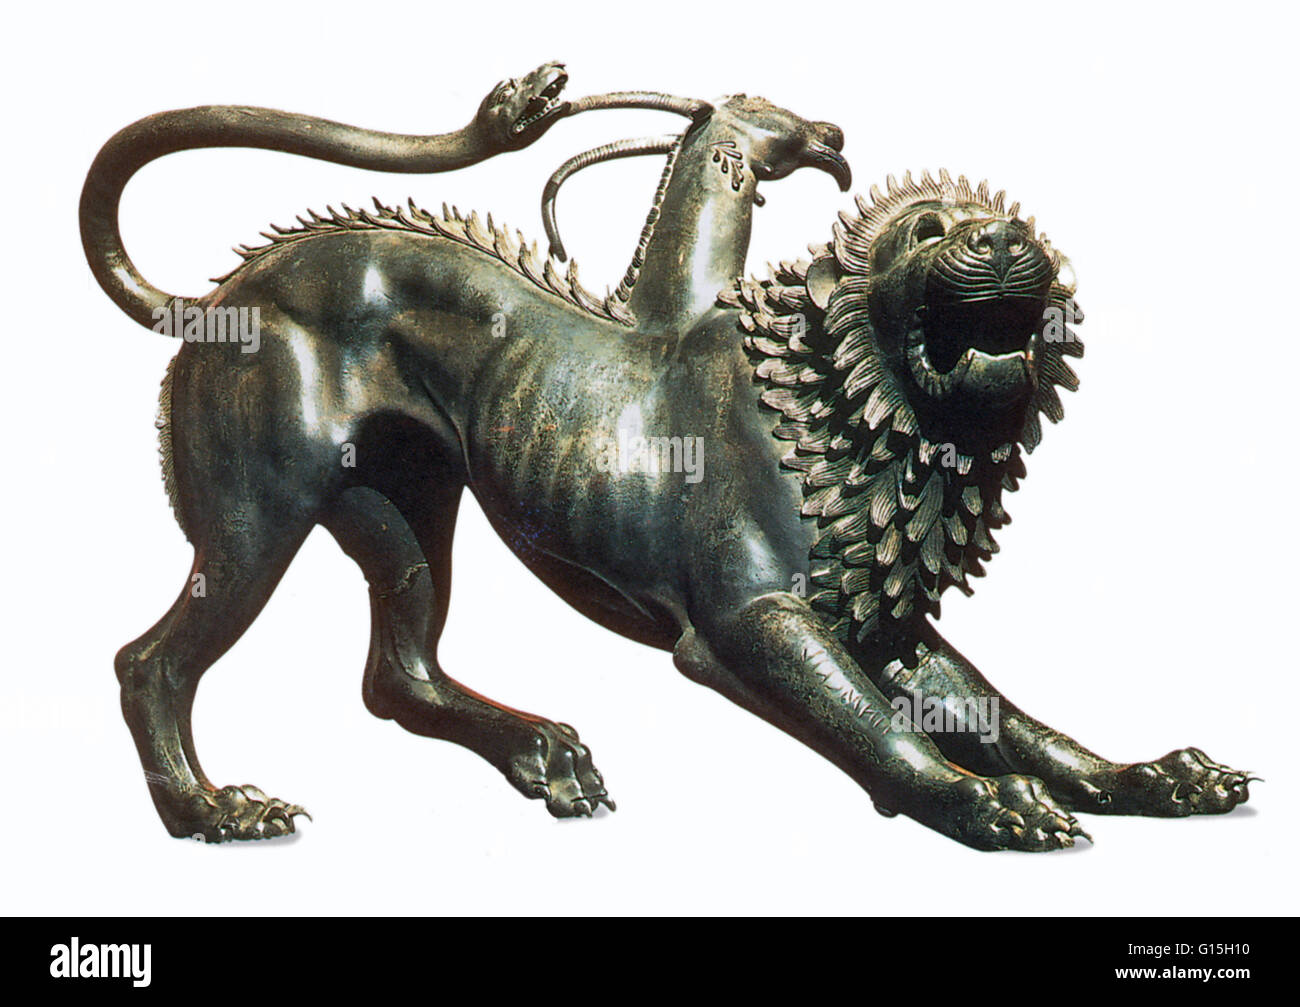 La quimera de Arezzo, una escultura de bronce del siglo V A.C., es uno de los mejores ejemplos de arte etrusco La quimera es una criatura perteneciente a la mitología griega, compuesta por varias partes de animales (León, cabra y serpiente). Foto de stock